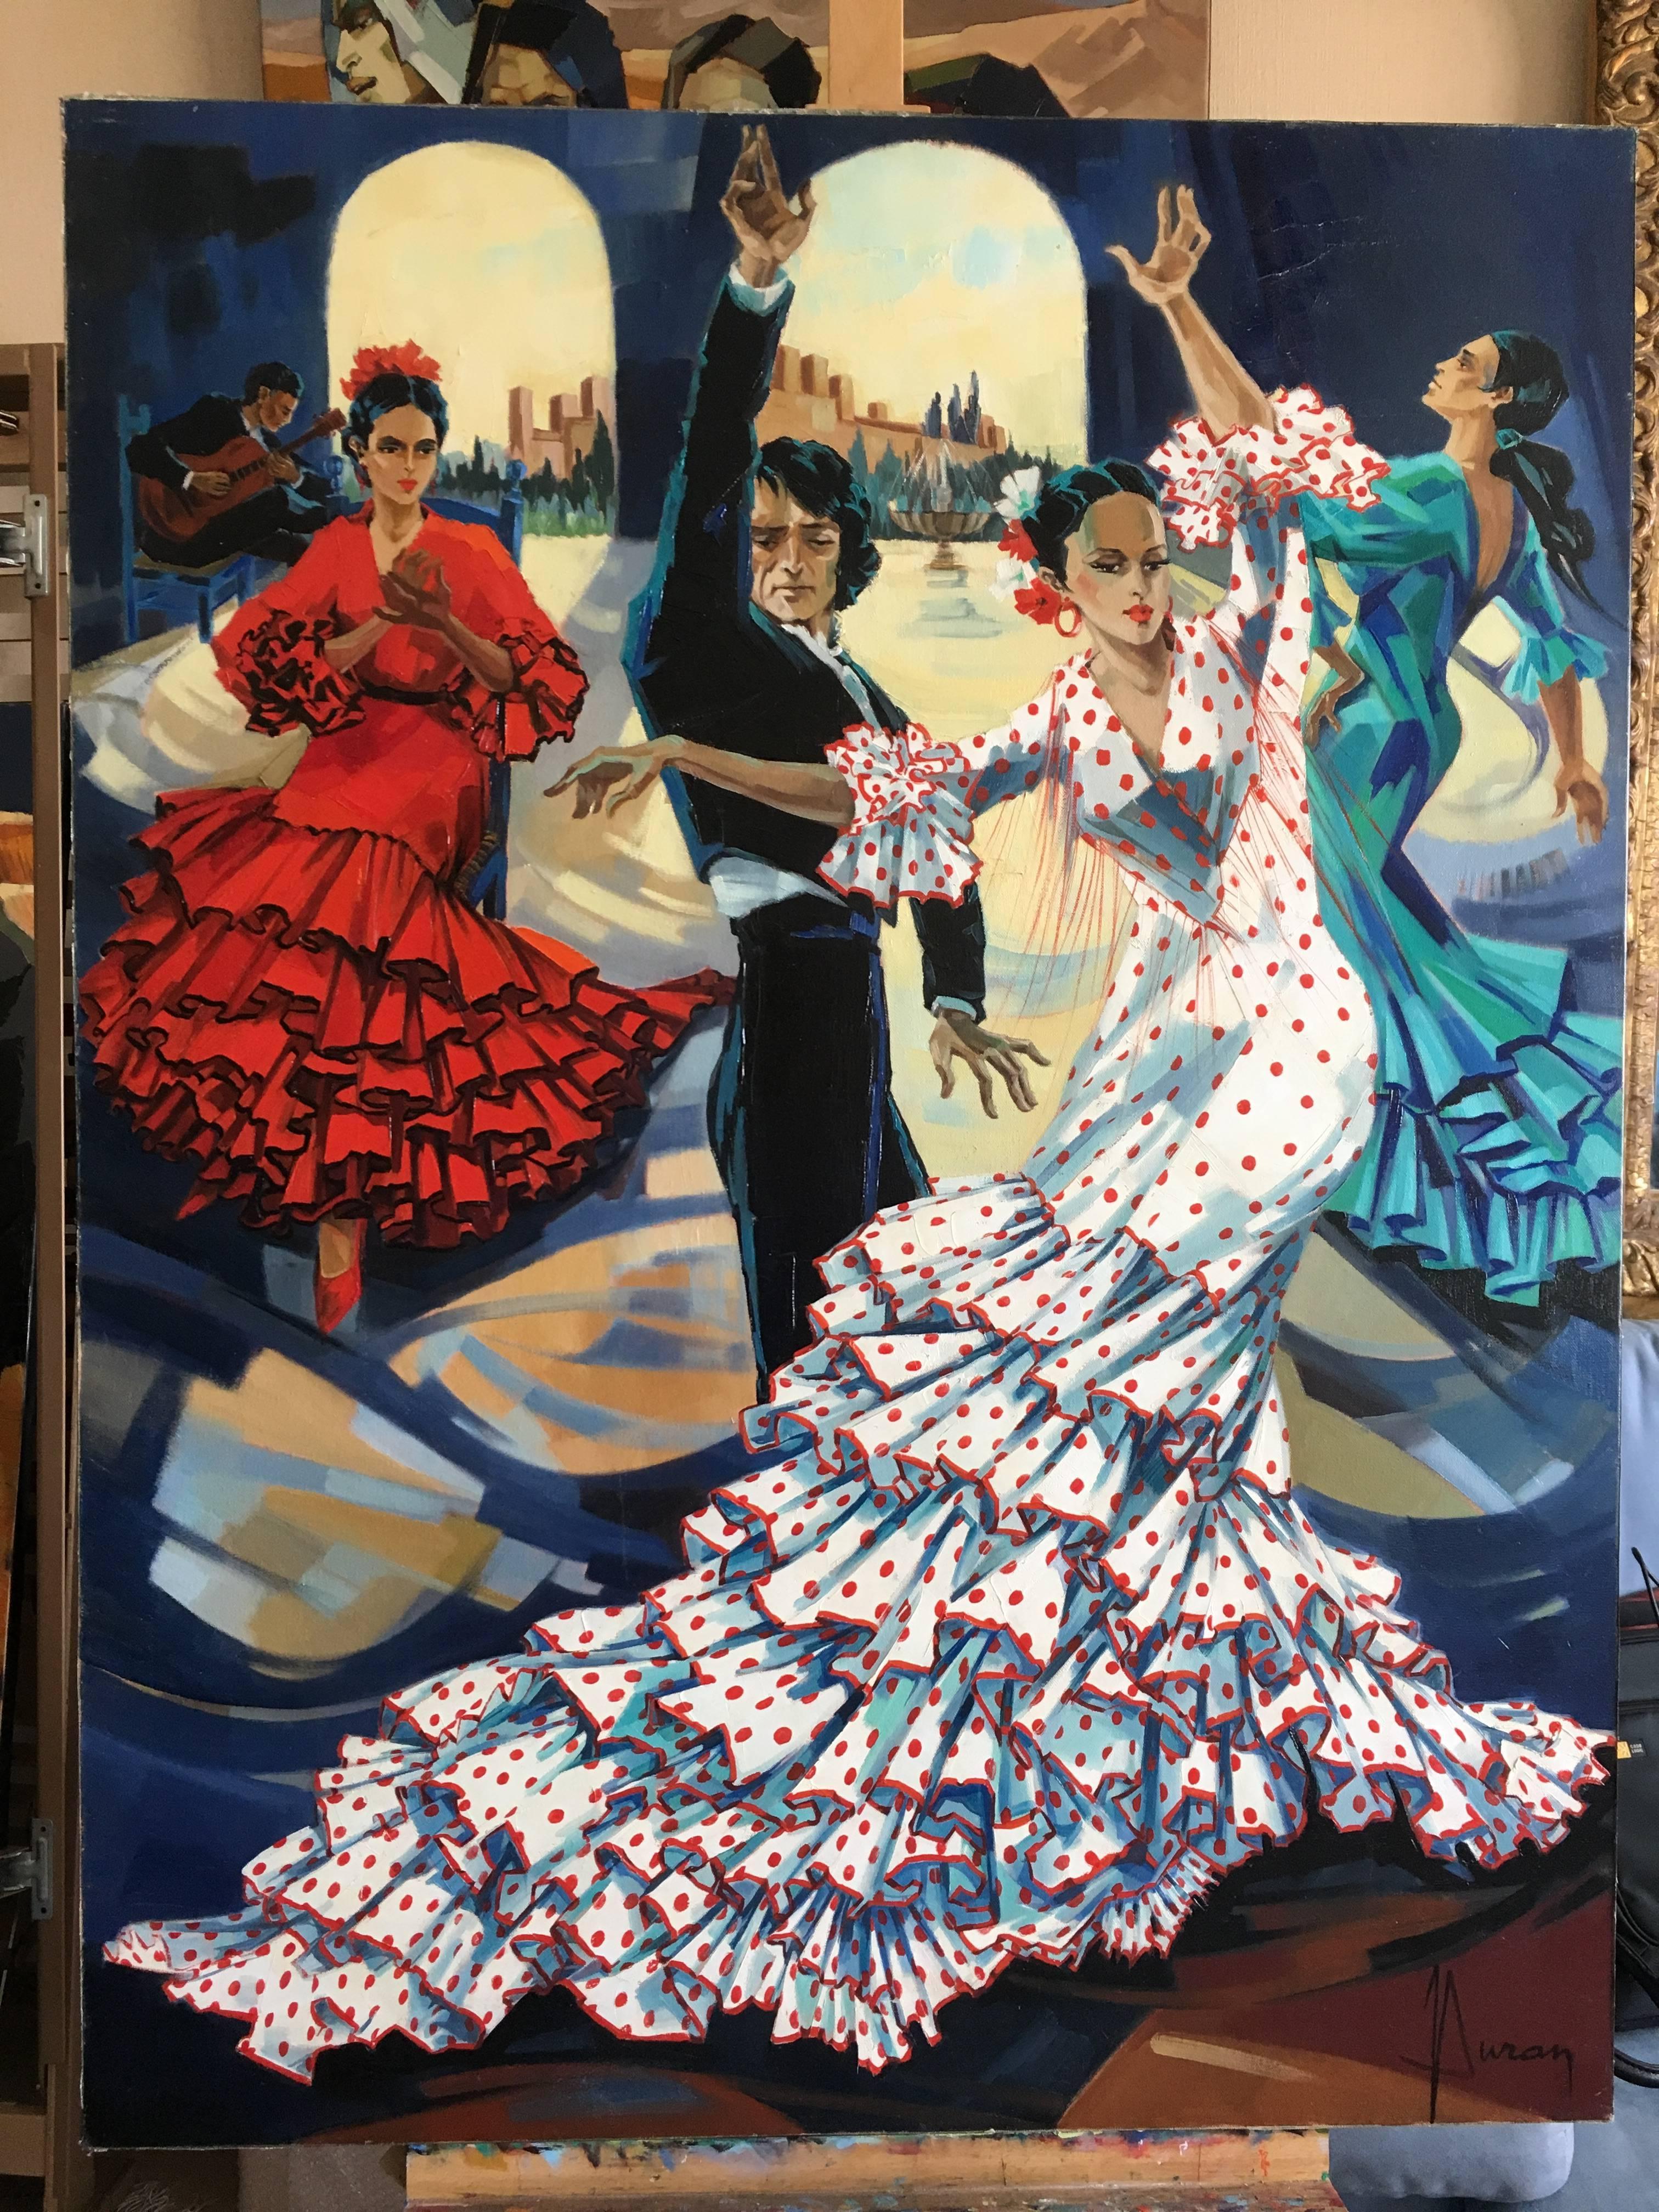 Bulerias, flamenco dance, oil on canvas - Black Portrait Painting by Jori Duran